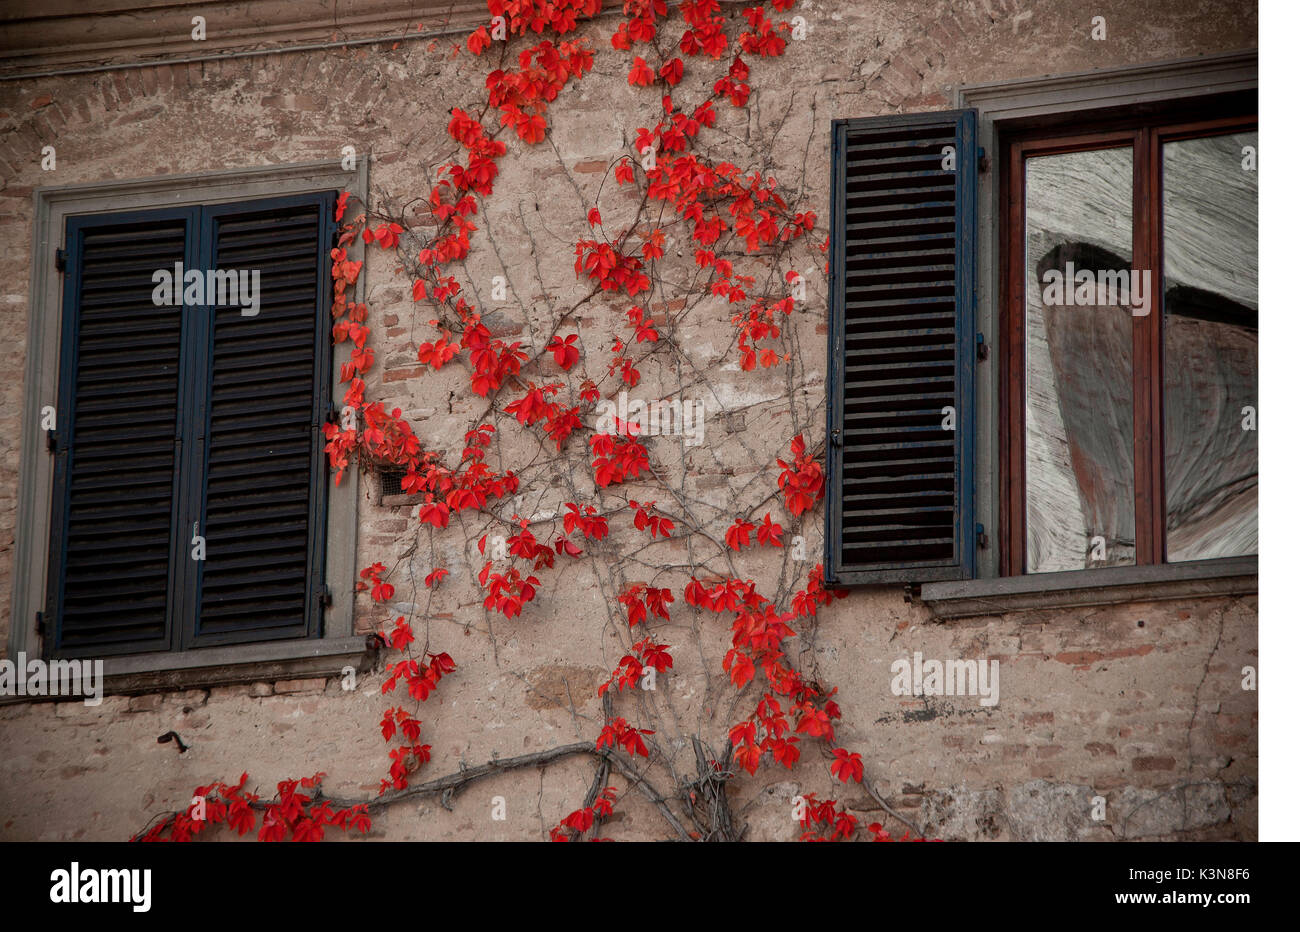 Dettaglio di un ivy con foglie rosse arrampicarsi tra due finestre su una parete di una vecchia casa nel centro di San Gimignano. Toscana, Italia. Foto Stock